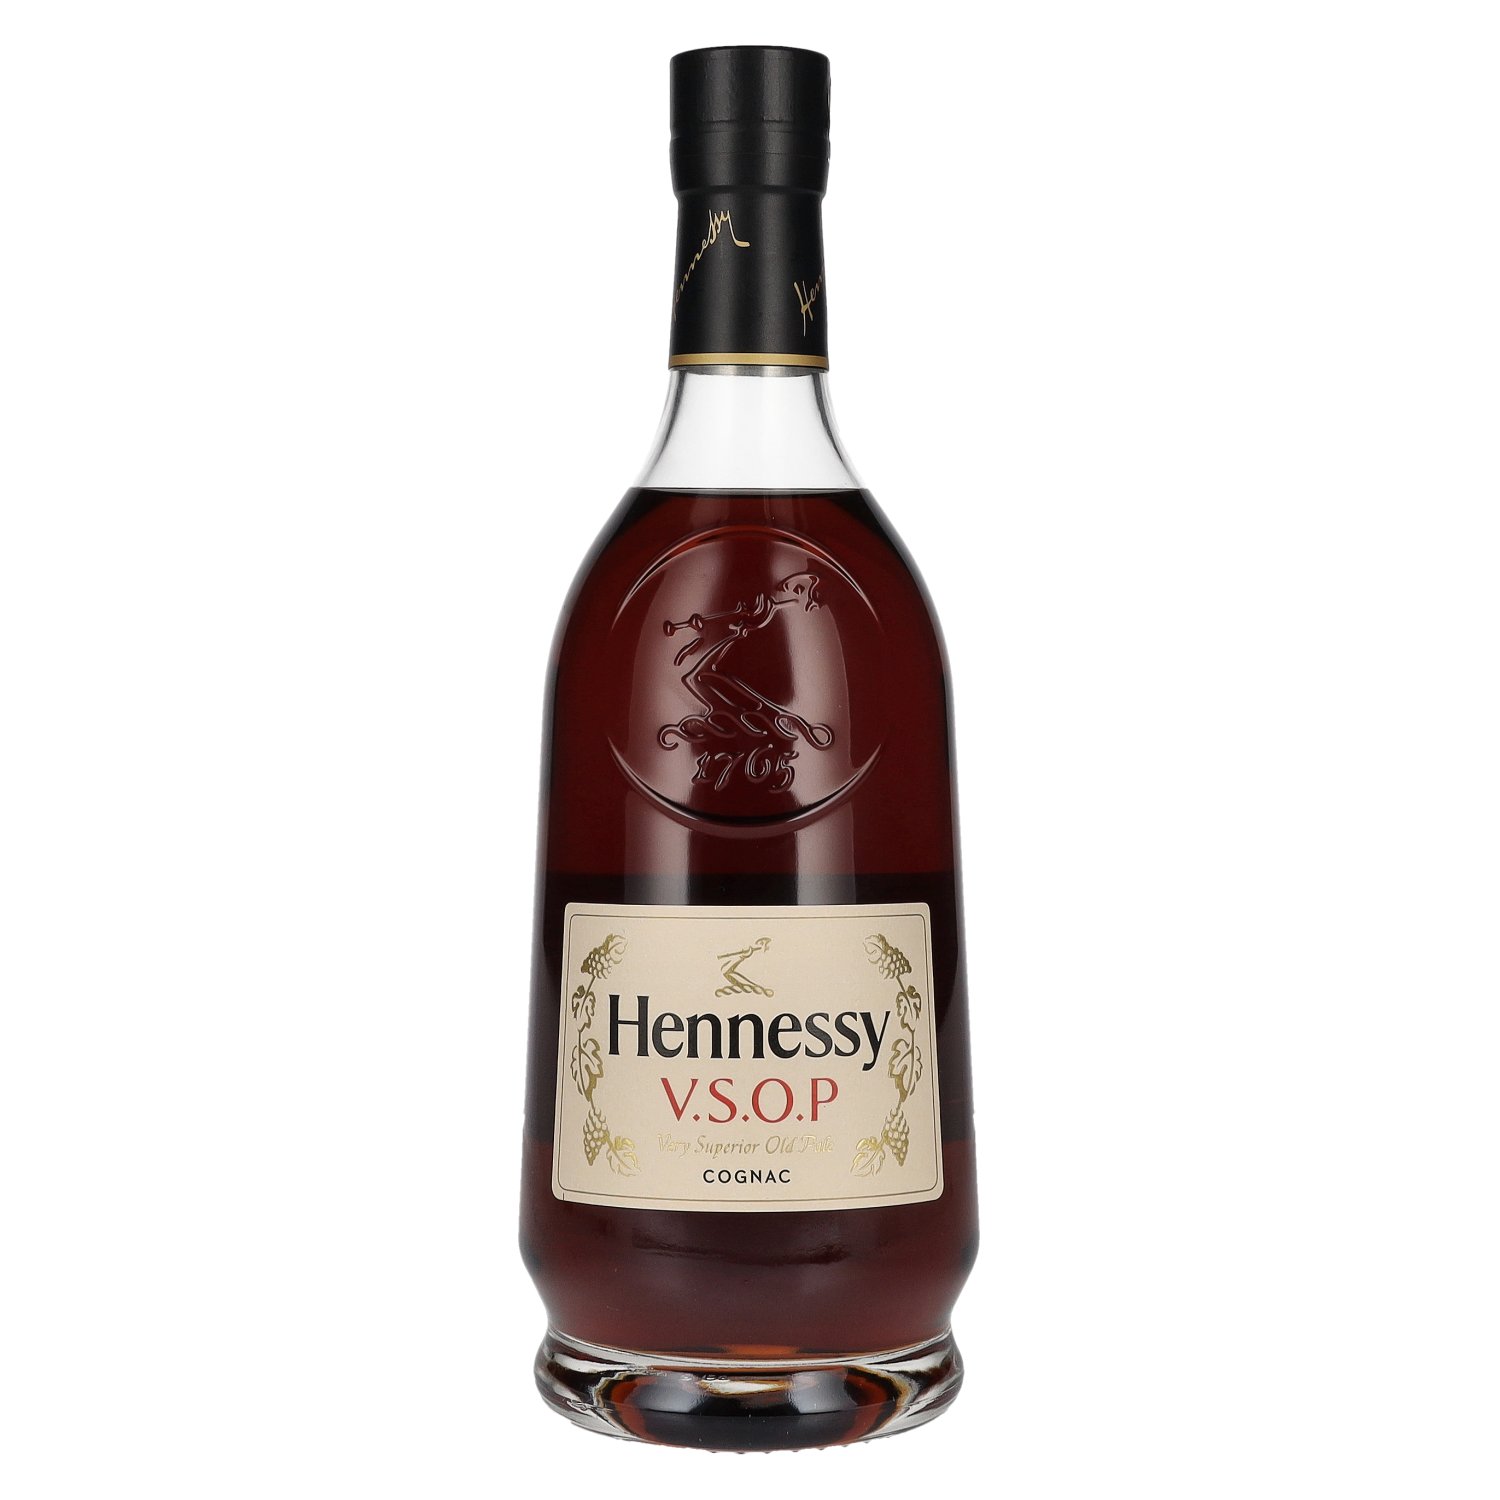 Hennessy V.S.O.P Cognac 40% Vol. - delicando 0,7l